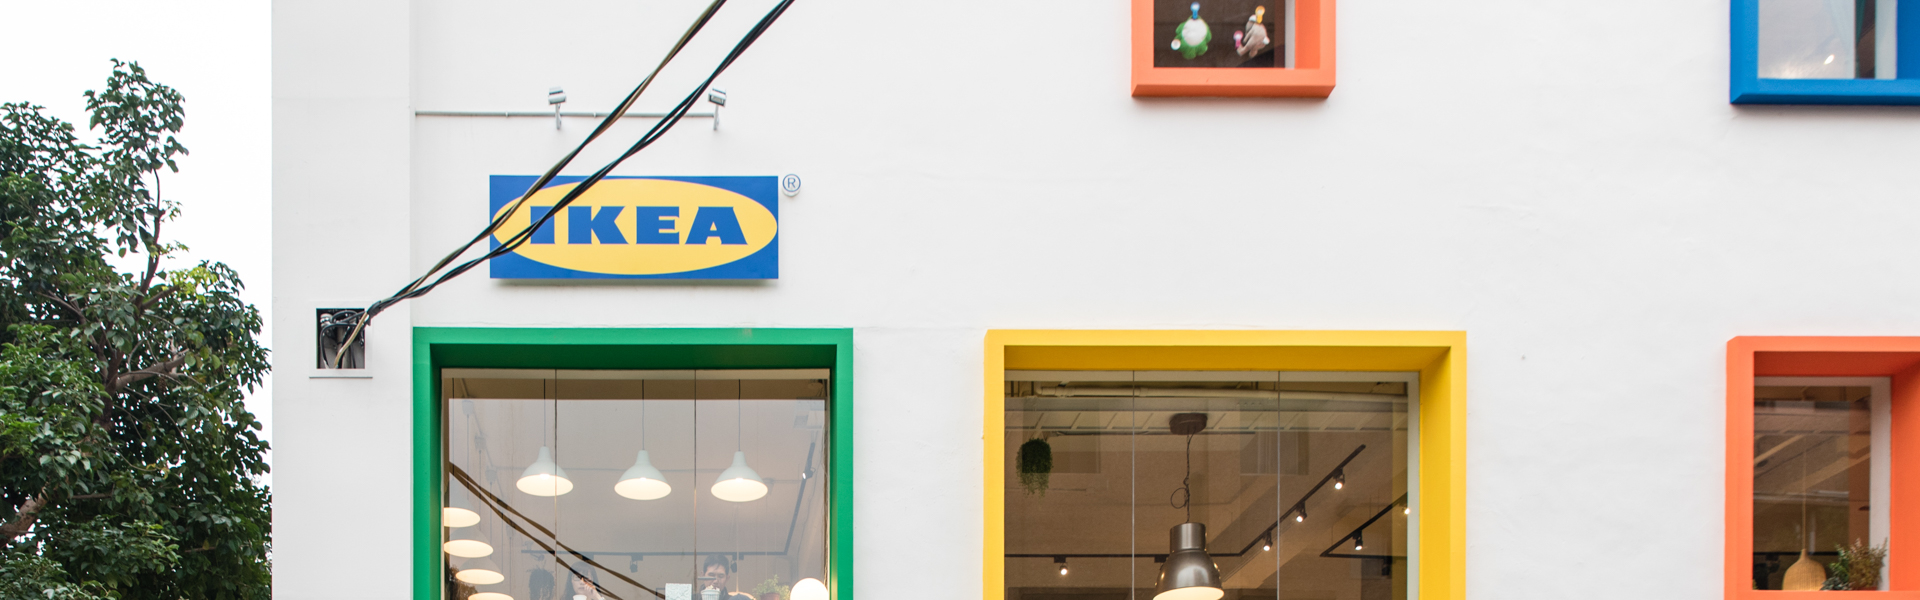 瑞典清新混搭臺式傳統， IKEA House 讓你與理想的家近一點